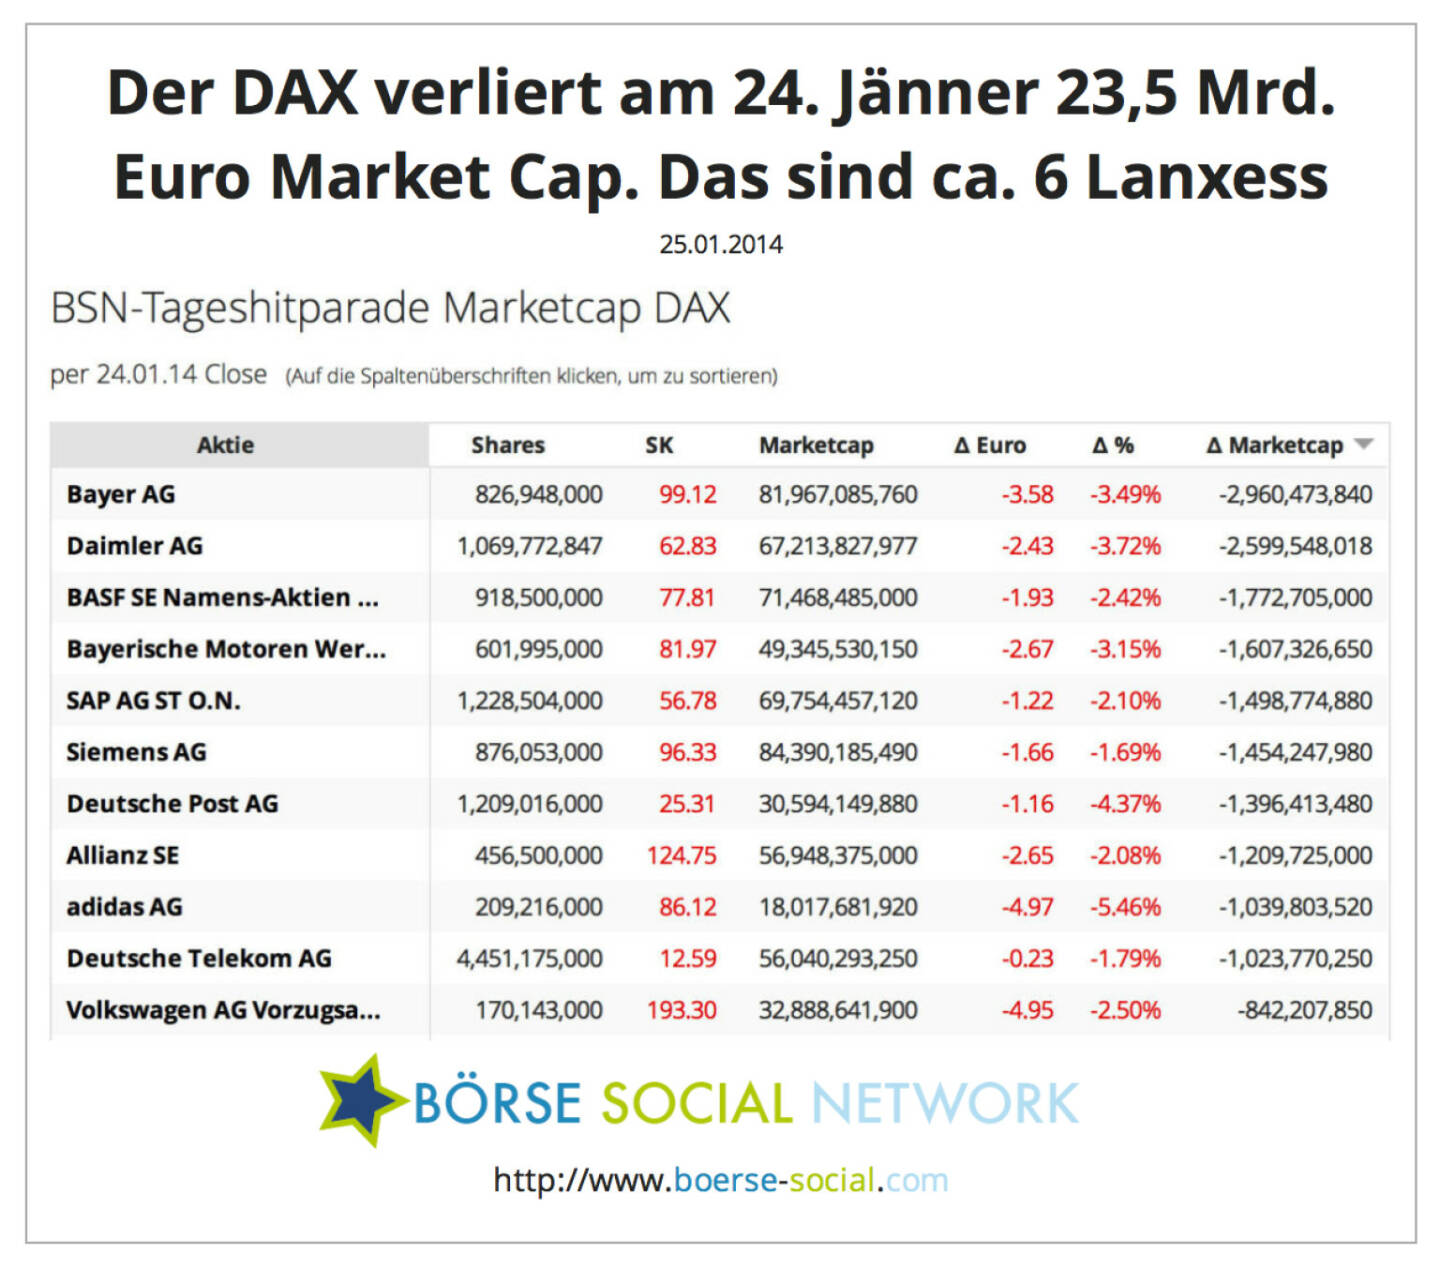 Der DAX verliert am 24. Jänner 23,5 Mrd. Euro Market Cap. Das sind ca. 6 Lanxess http://boerse-social.com/launch/marketcap/dax